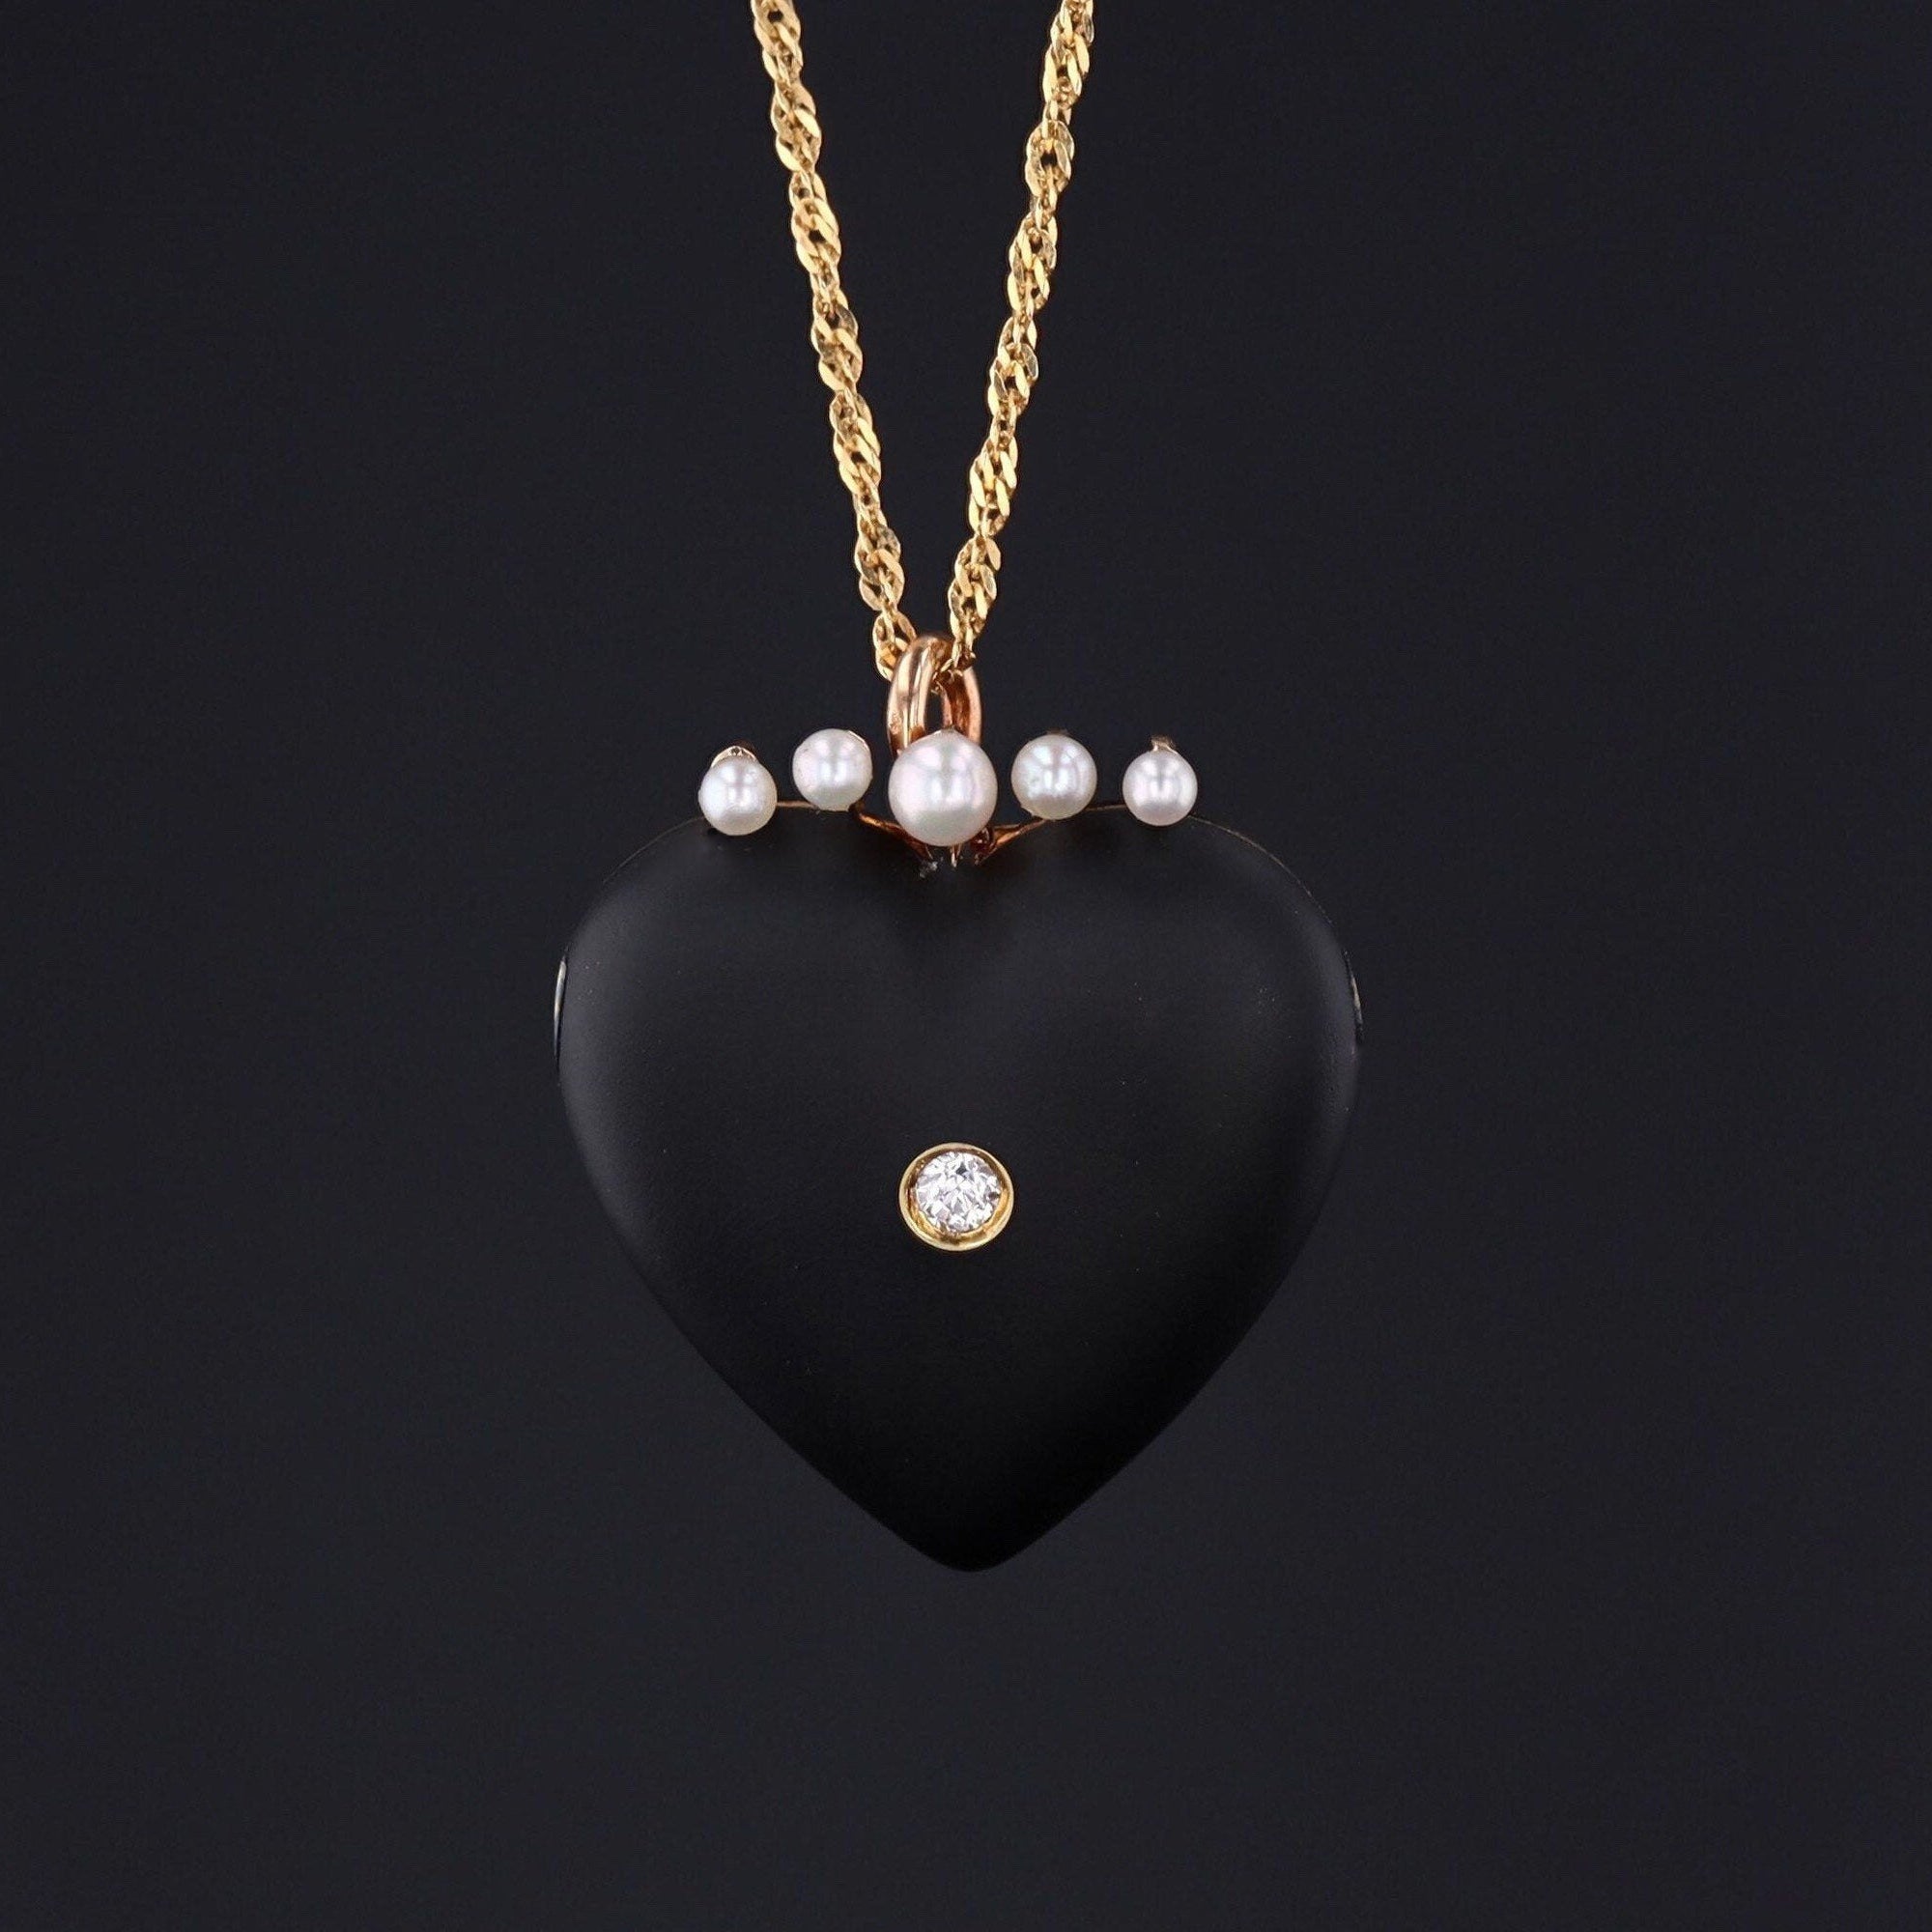 Heart Pendant or Brooch | Antique Black Enamel Diamond & Pearl Heart 